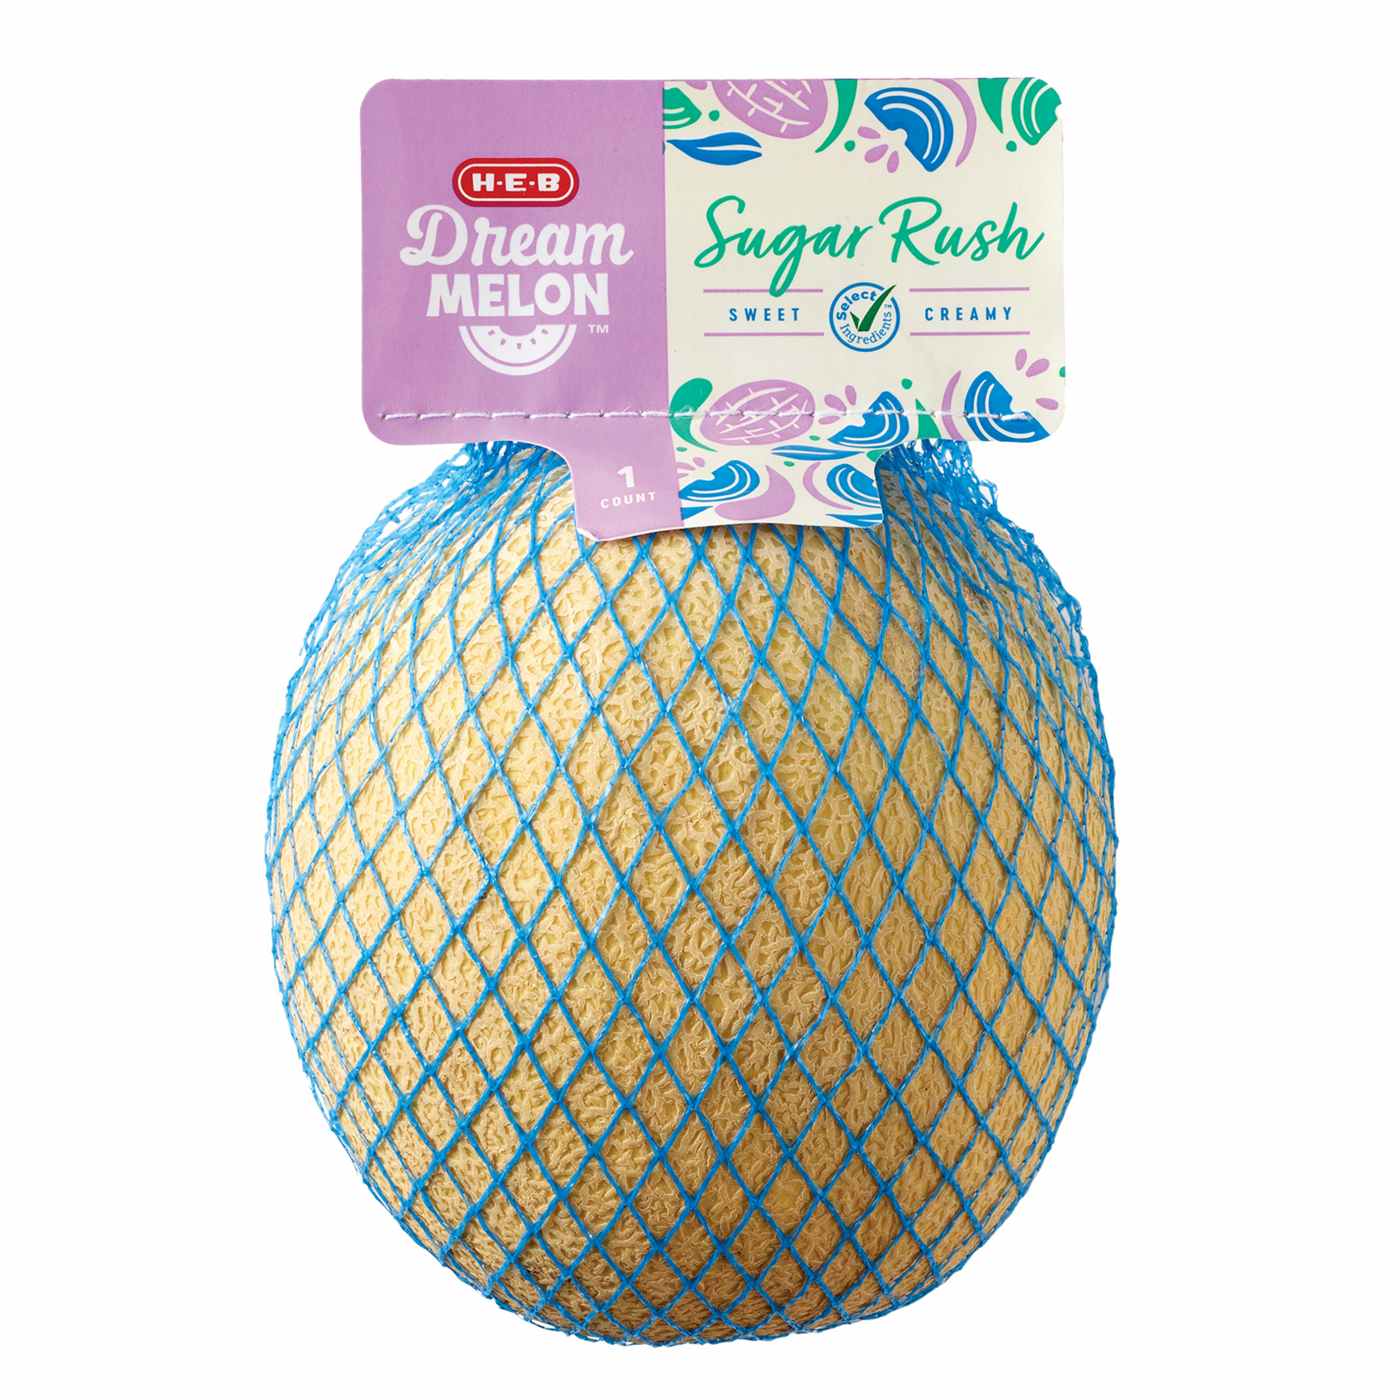 H-E-B Dream Melon - Sugar Rush; image 1 of 2